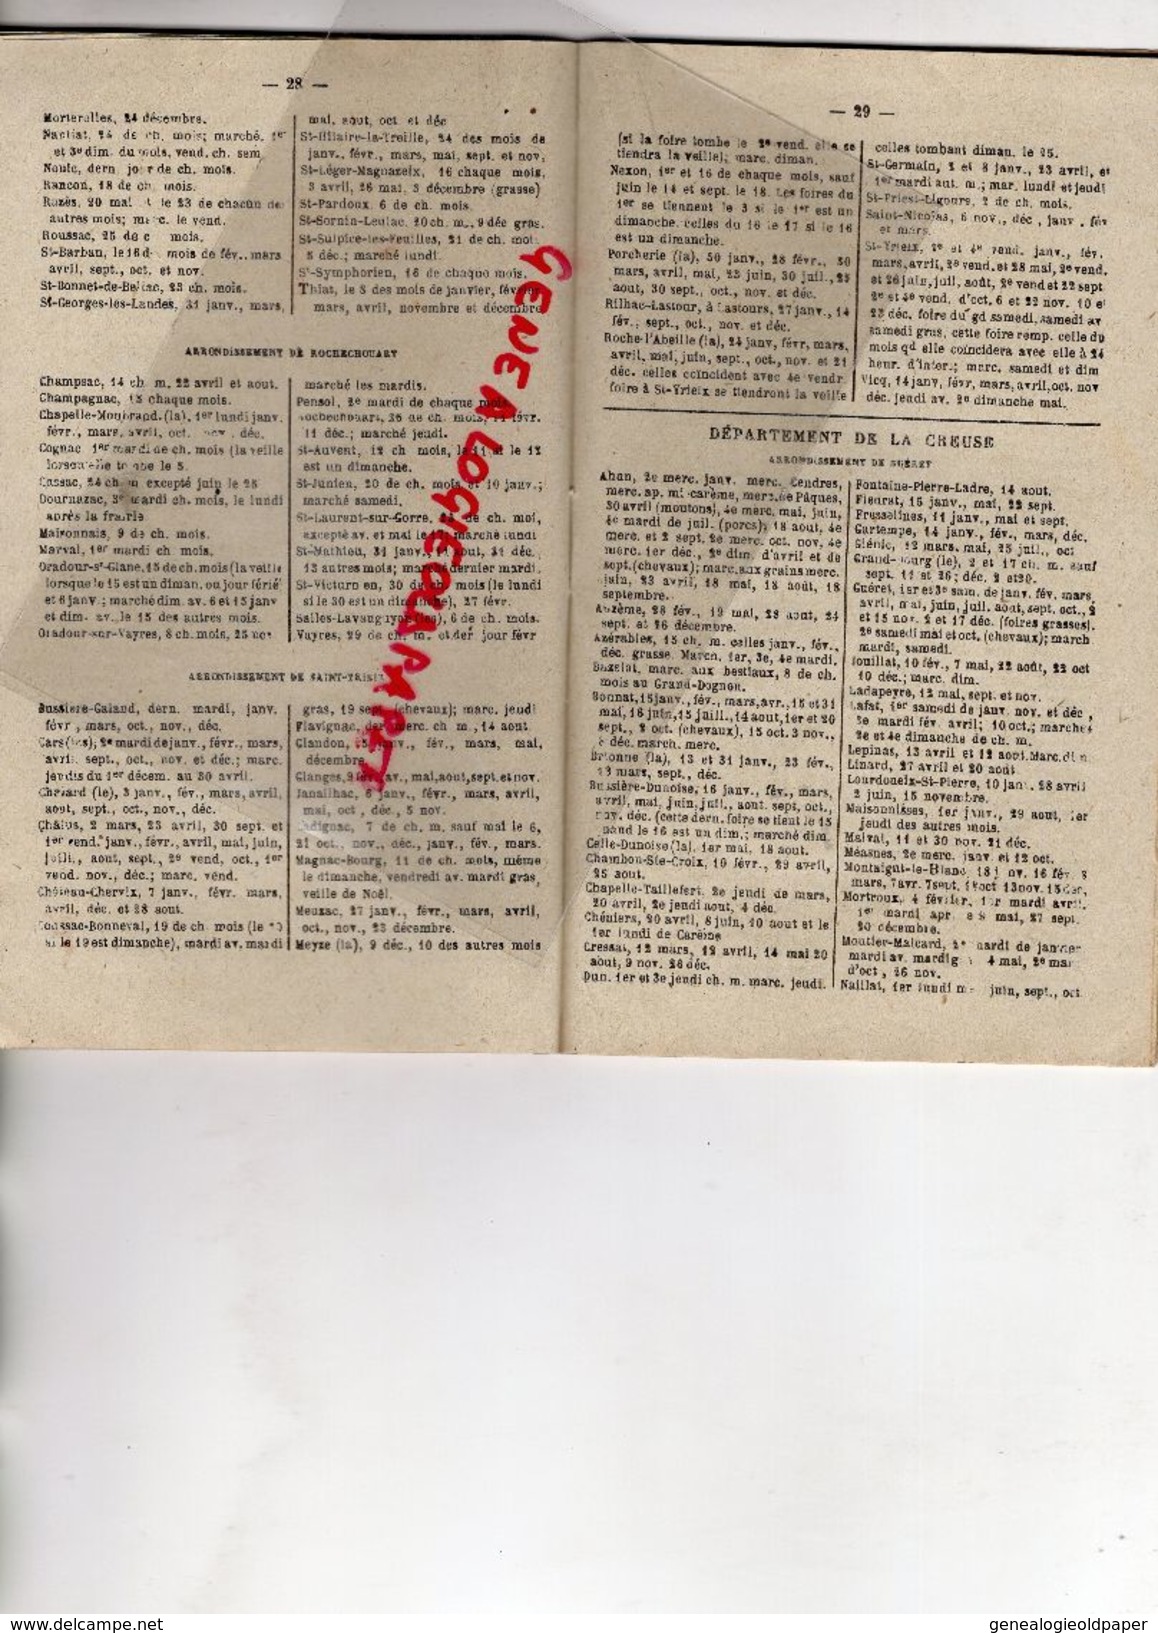 87-19-23- PETIT ALMANACH LIMOUSIN AGRICOLE ET COMMERCIAL-1918-IMPRIMERIE DUCOURTIEUX GOUT-MONTAUBAN PILULES FOSTER